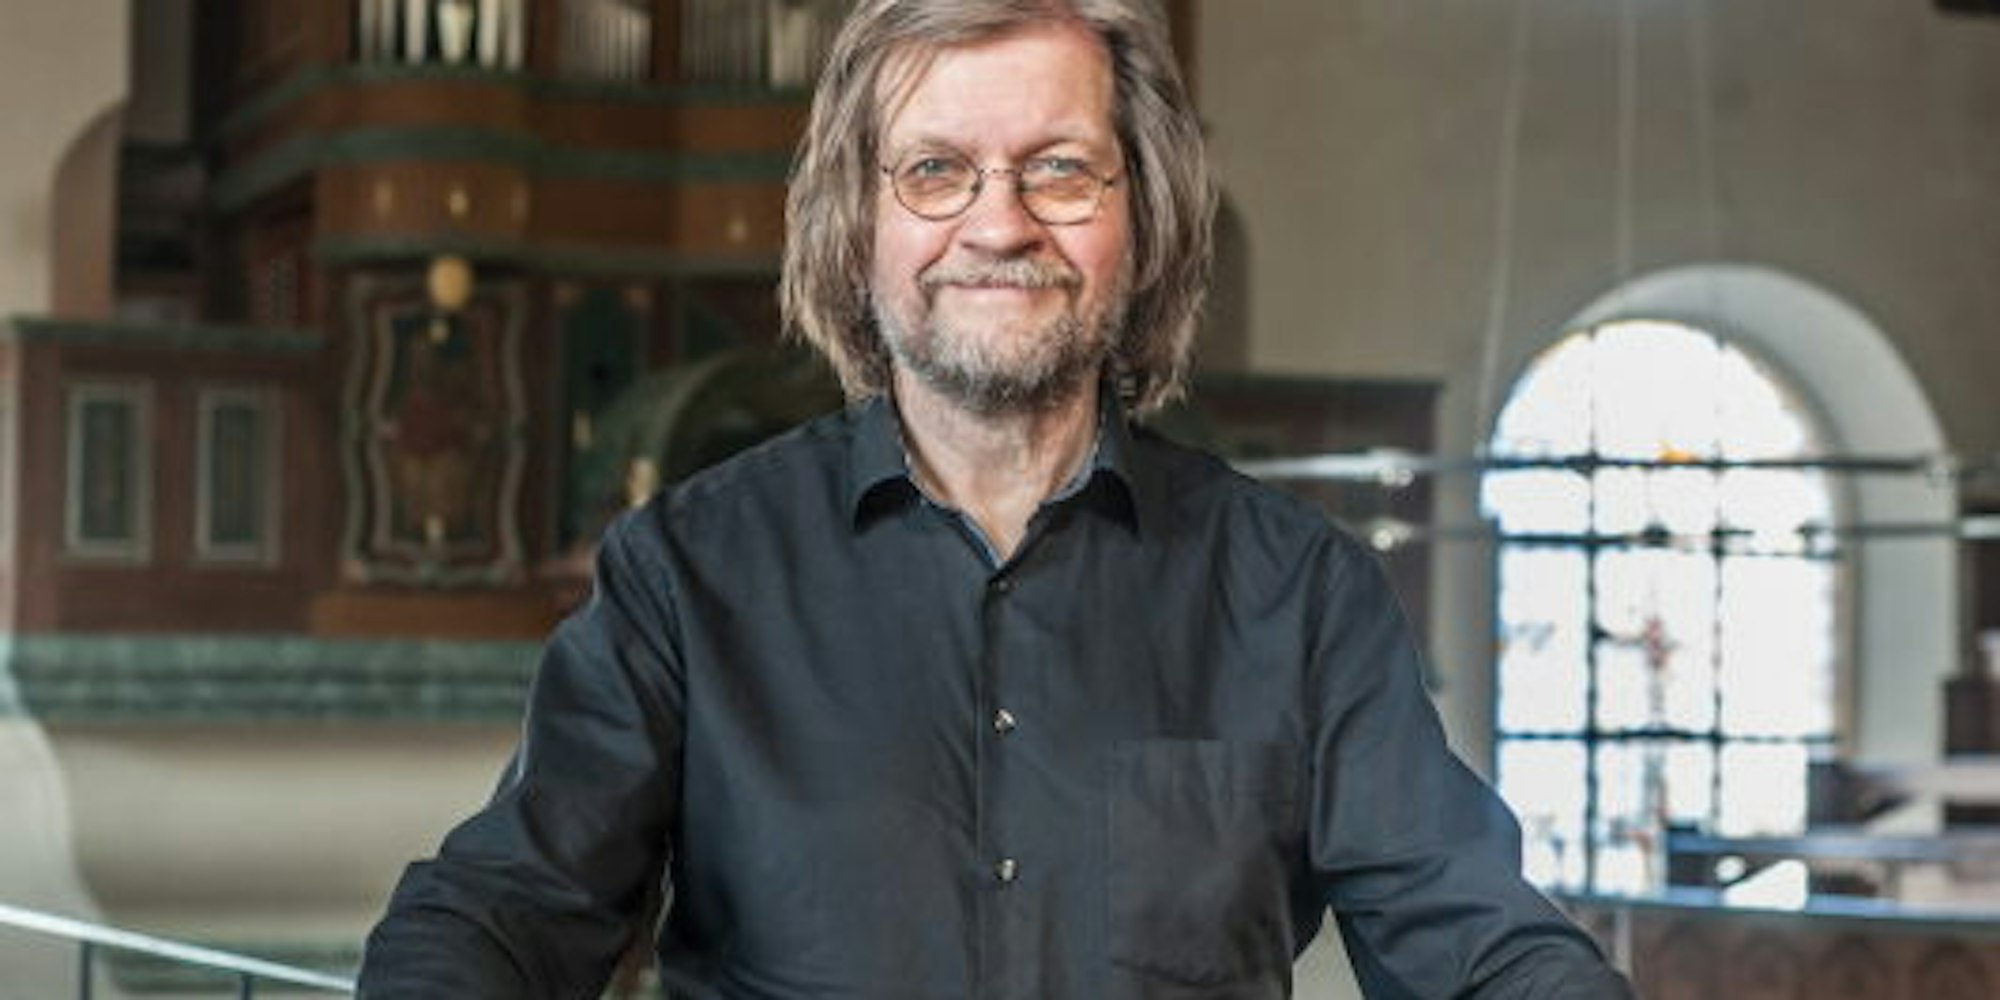 Seit 1985 ist Andreas Meisner Domorganist in Altenberg. Er spielte nun in der Evangelischen Kirche Marktstraße.